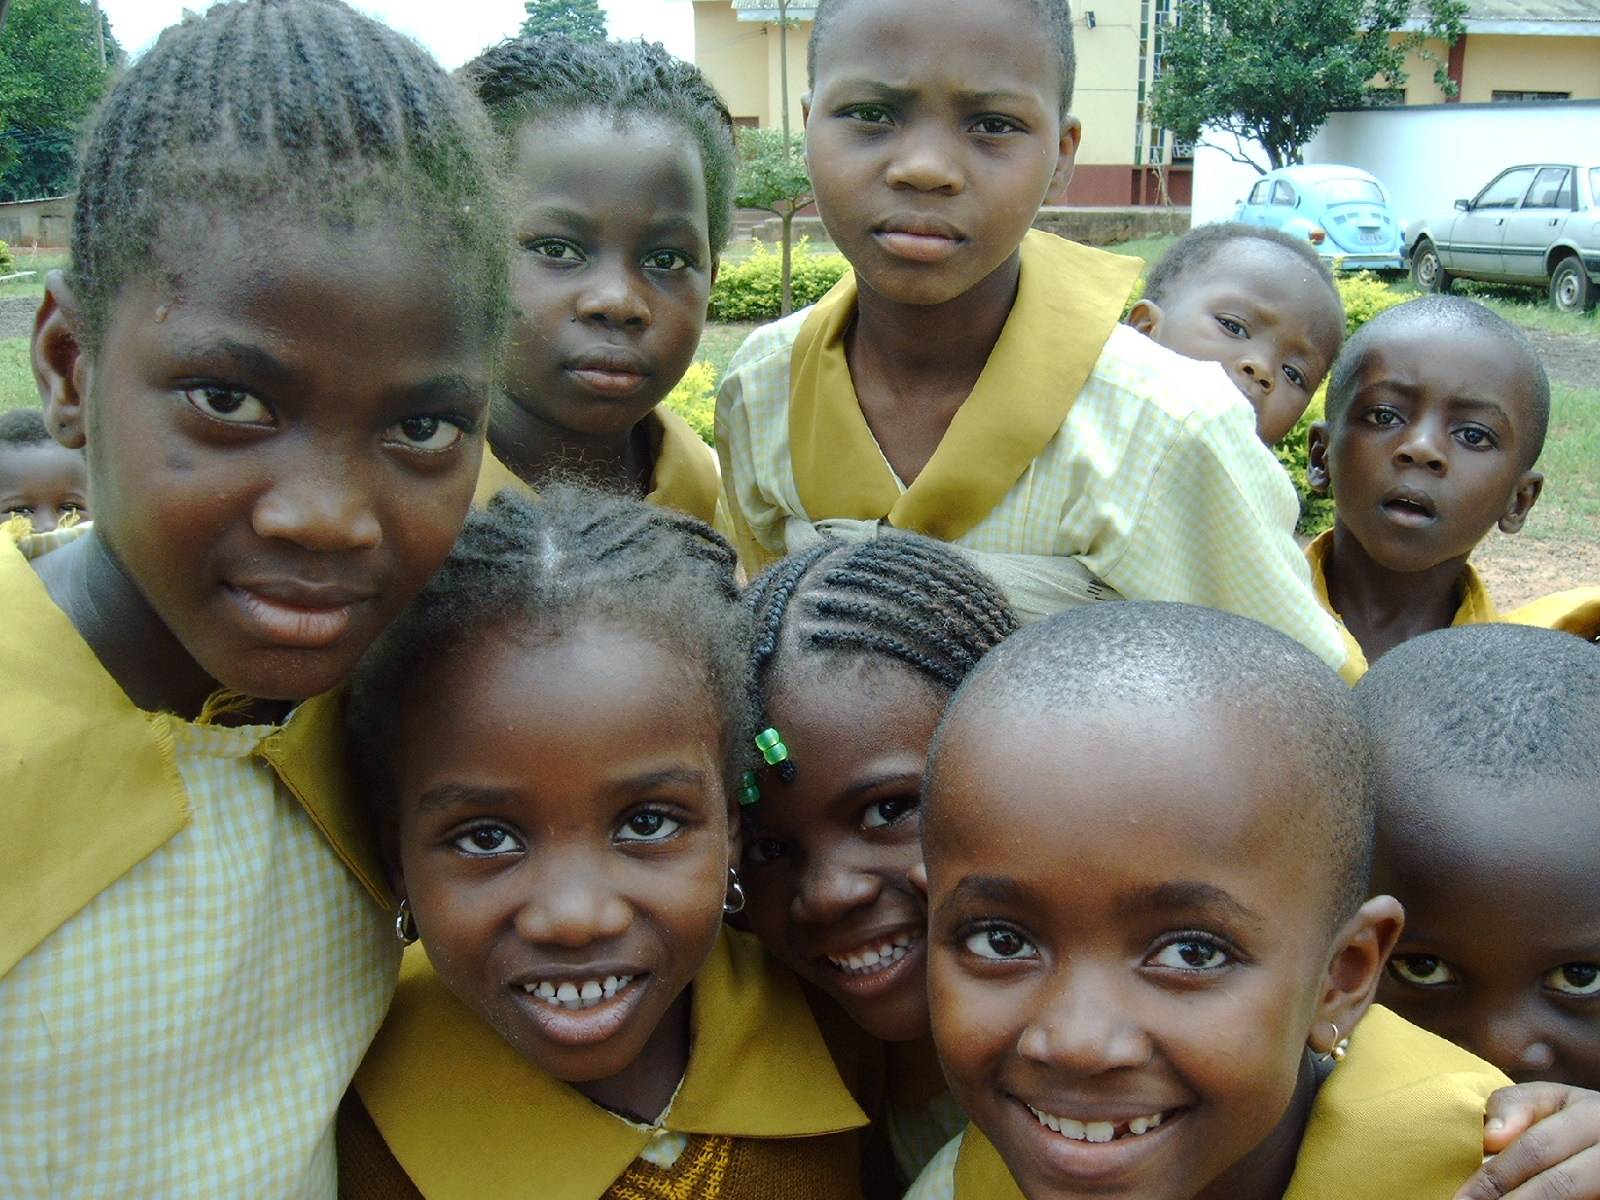 Patenschaft - Slider - Kinder - Gesichter - Awka - Nigeria - Afrika